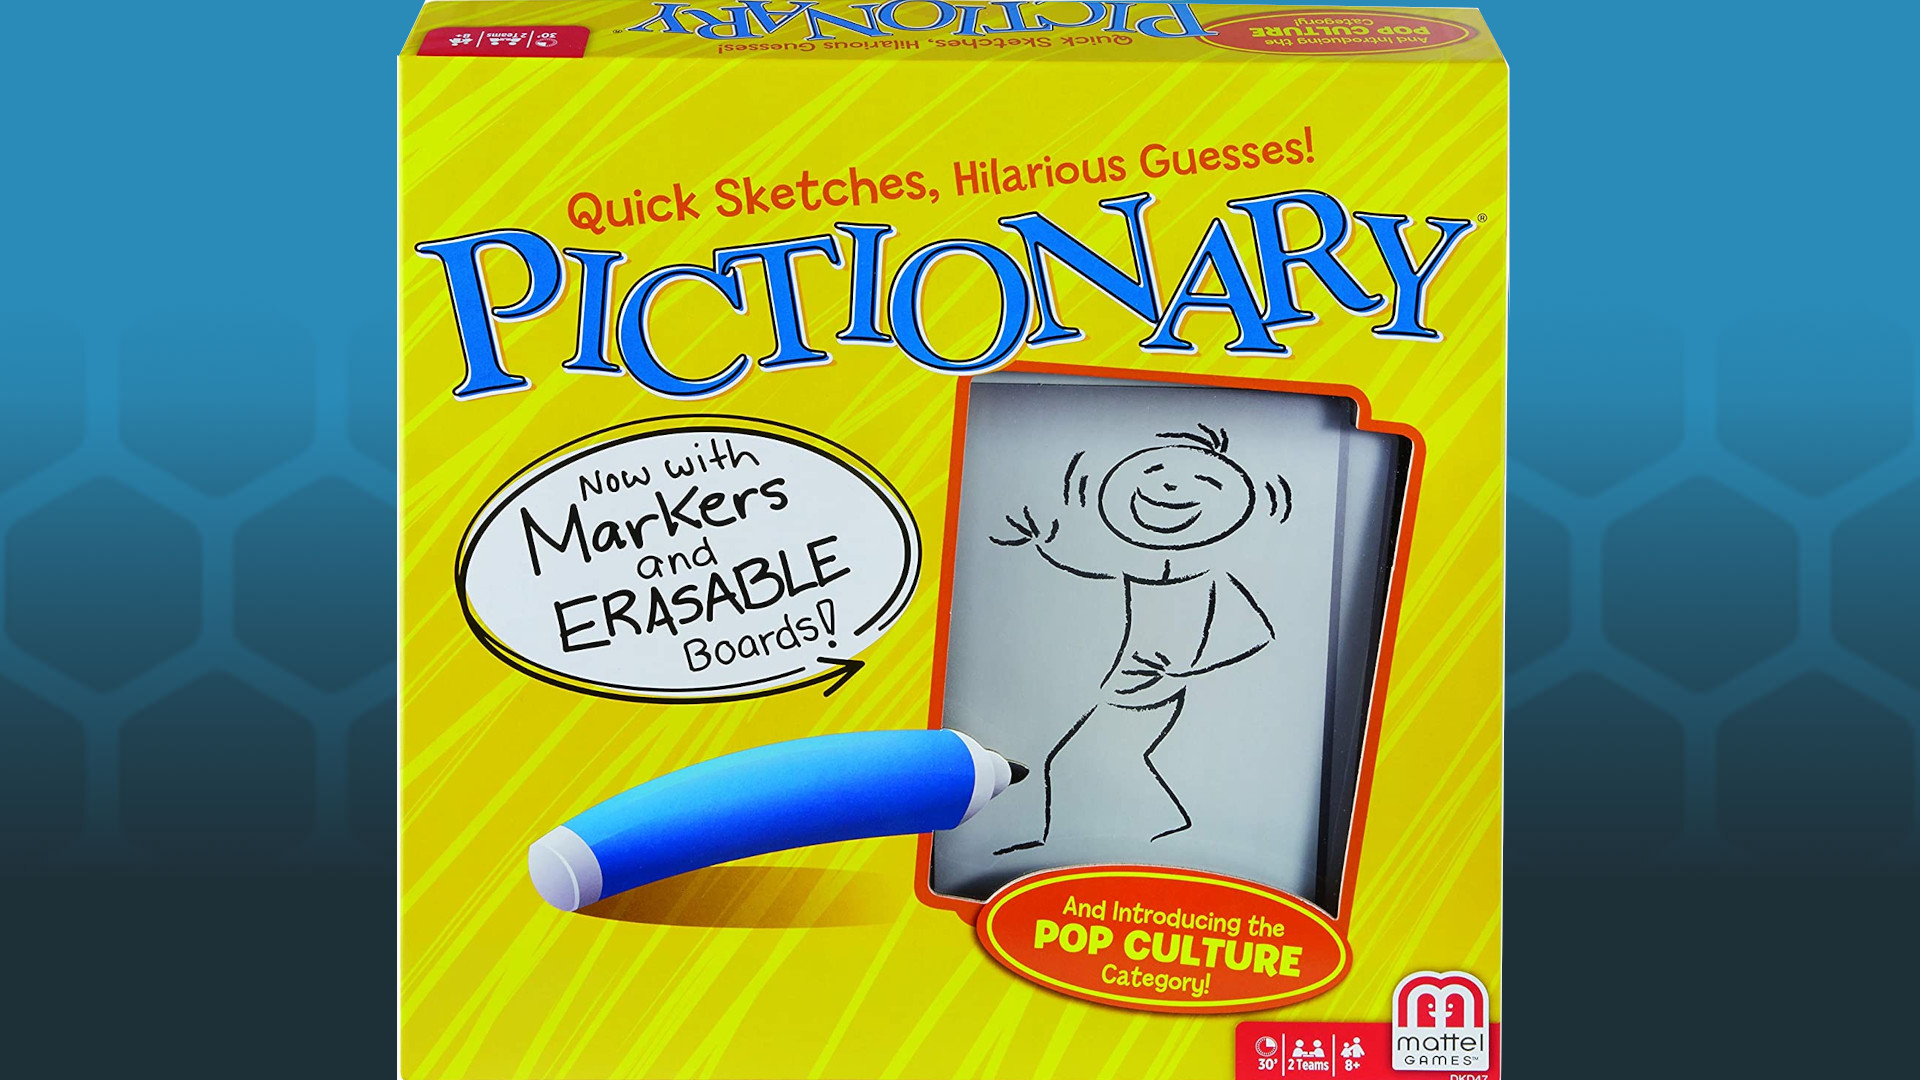 pictionary box